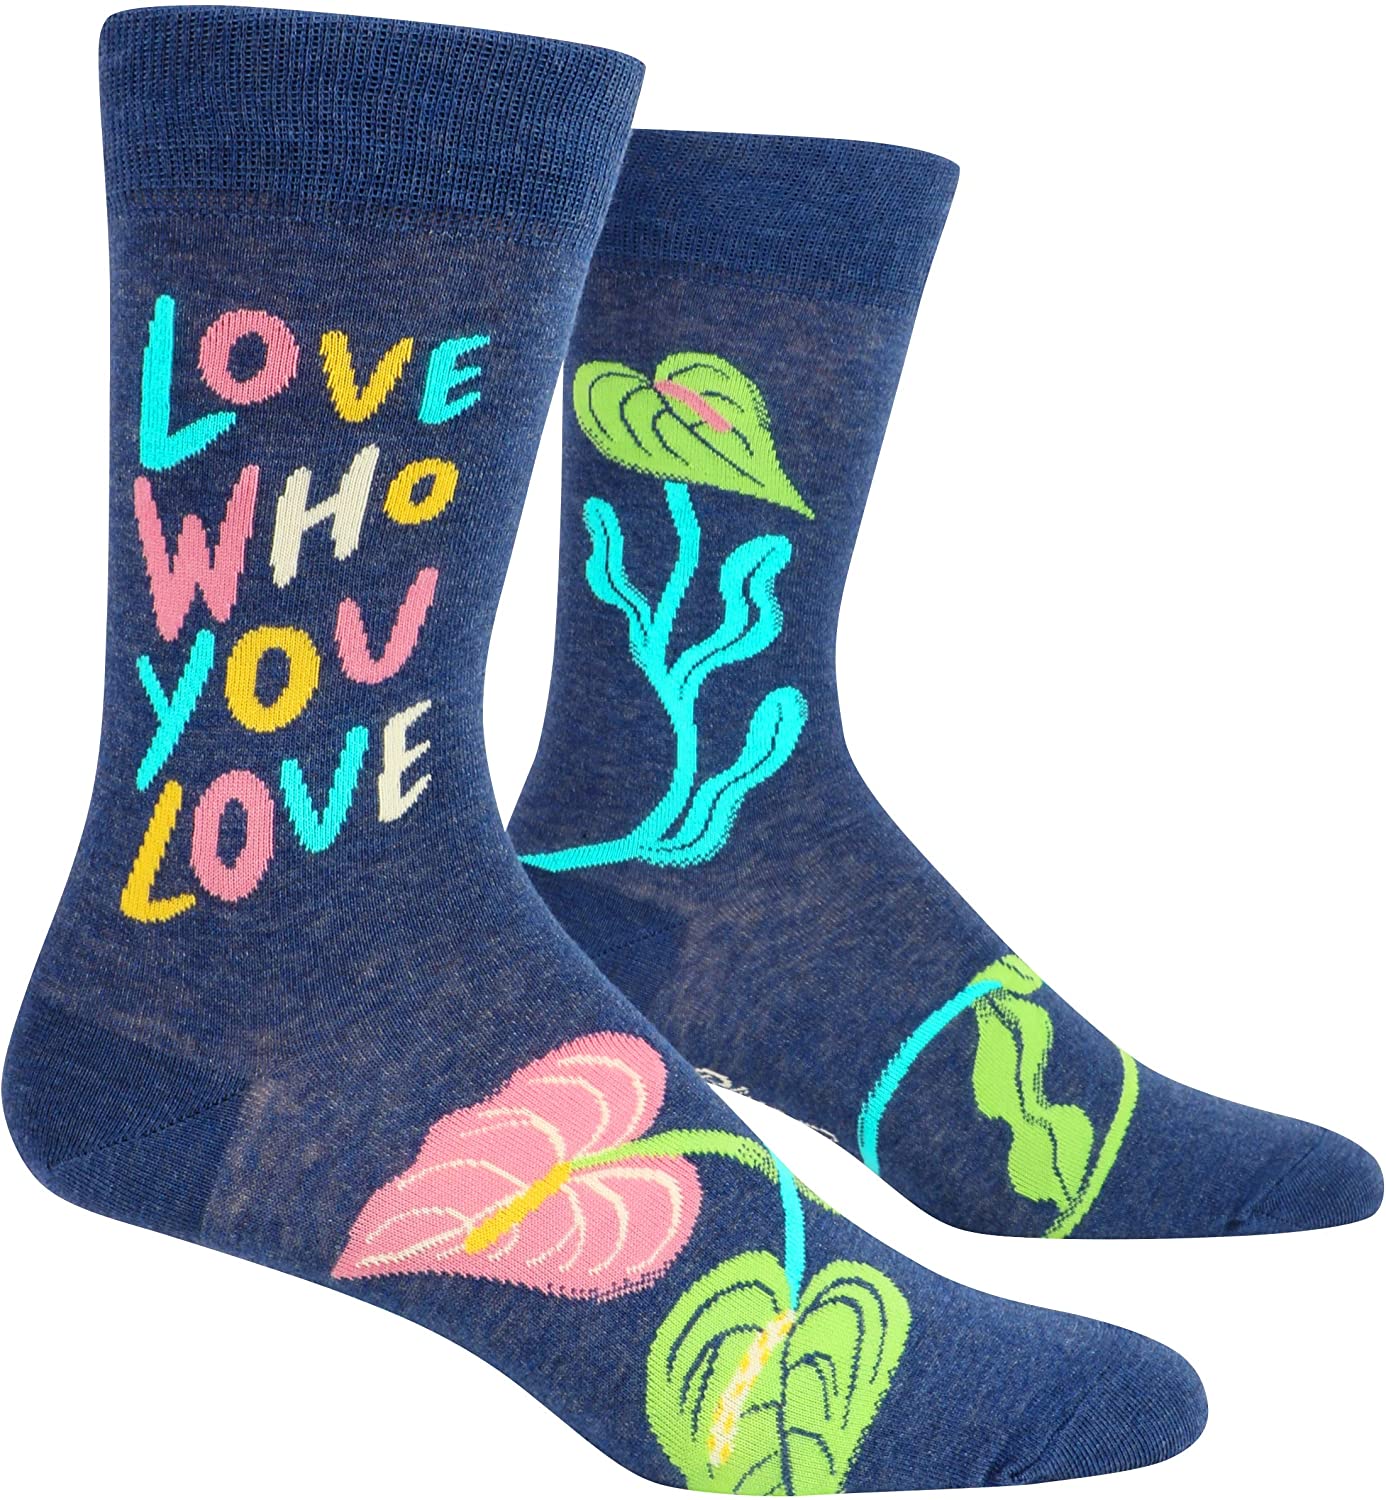 Socken Männer: Liebe, wen du liebst